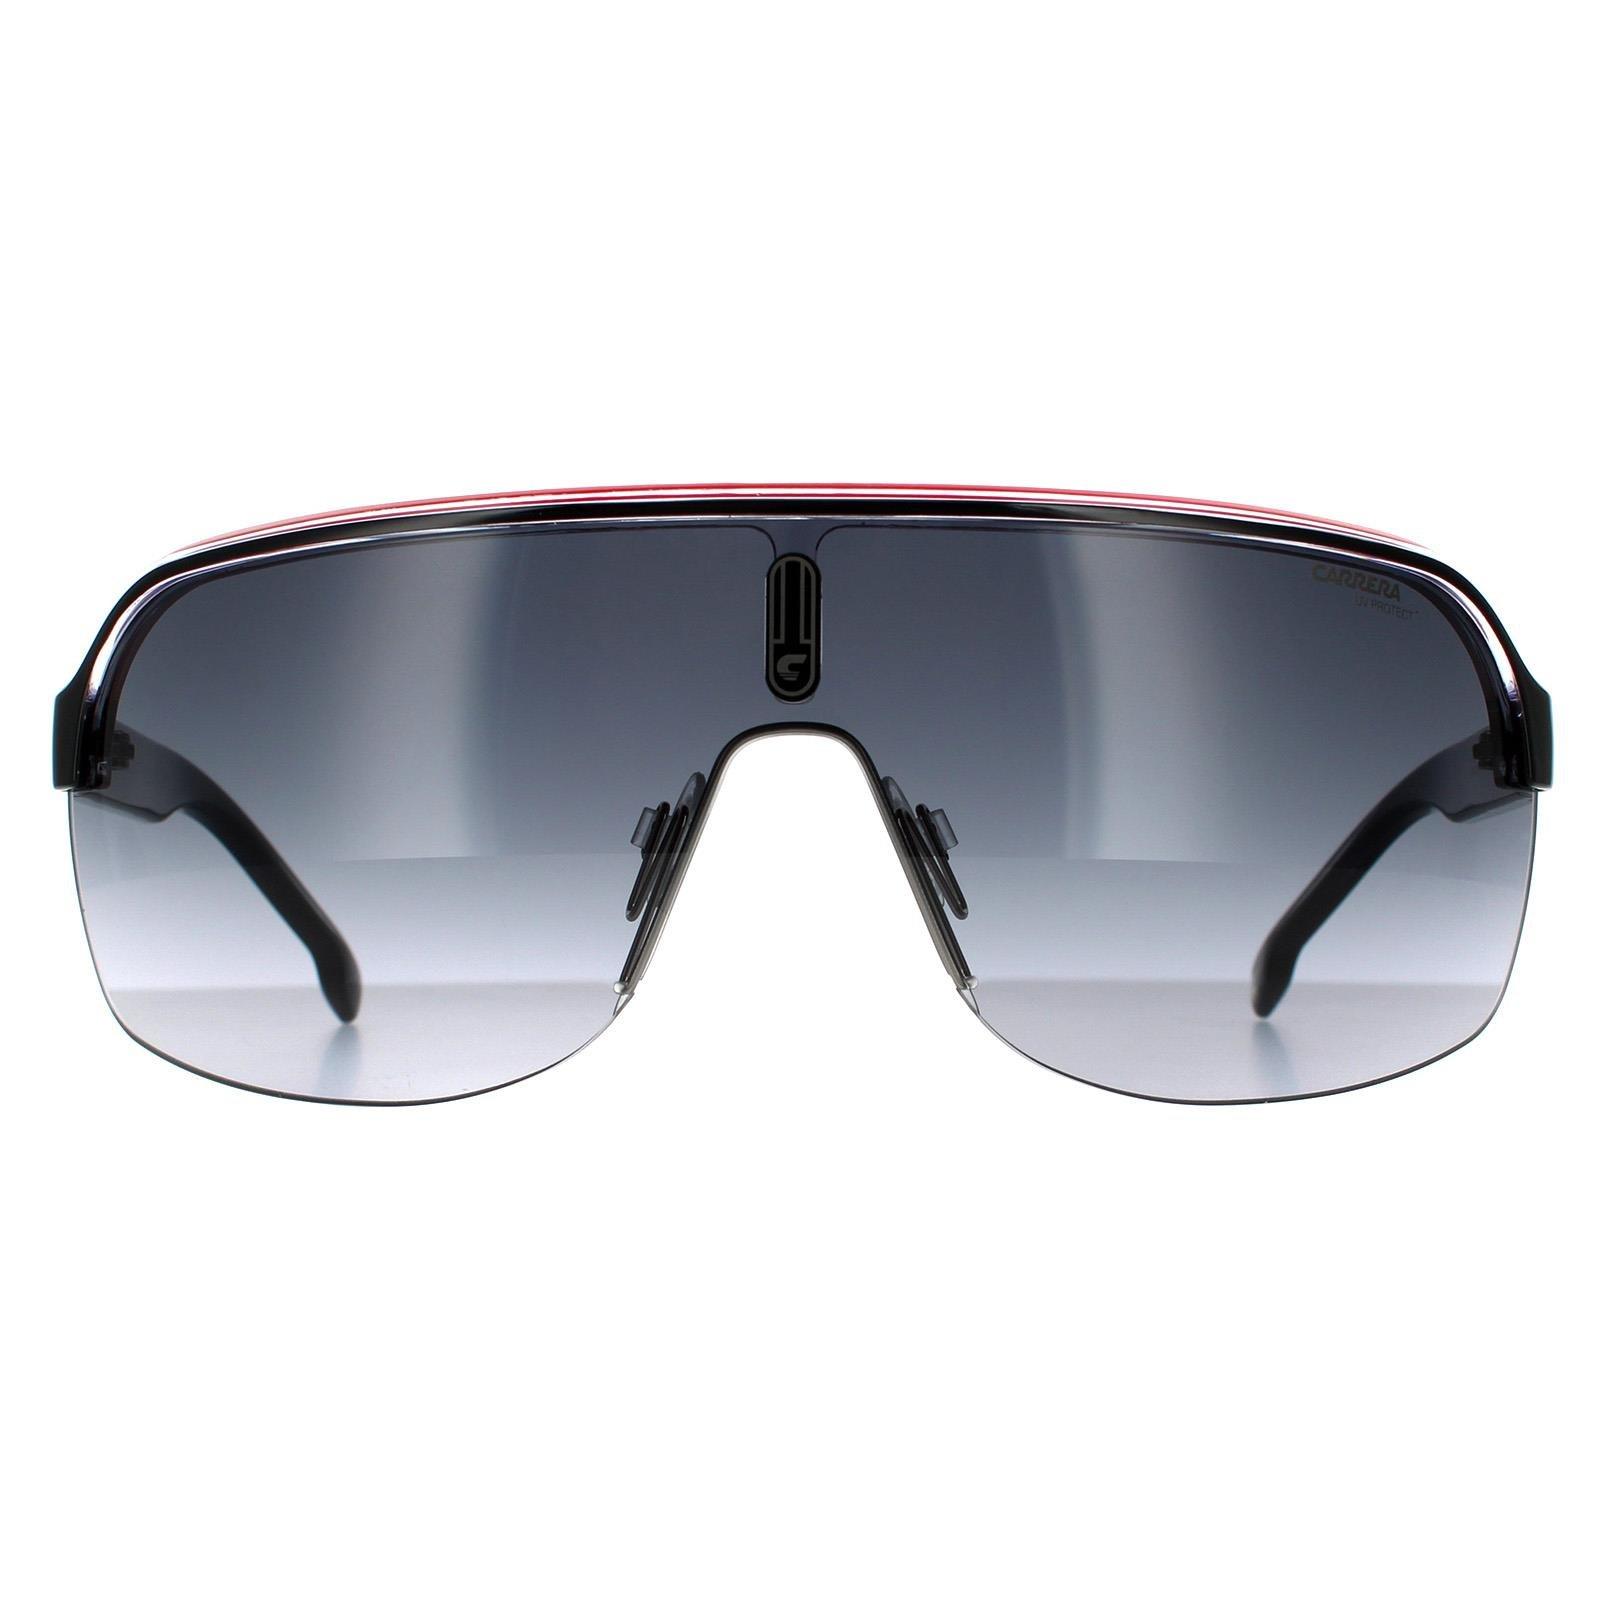 черные солнцезащитные очки на клипсе off white цвет black dark grey Черные кристально-белые красные темно-серые солнцезащитные очки с градиентом Shield Carrera, черный